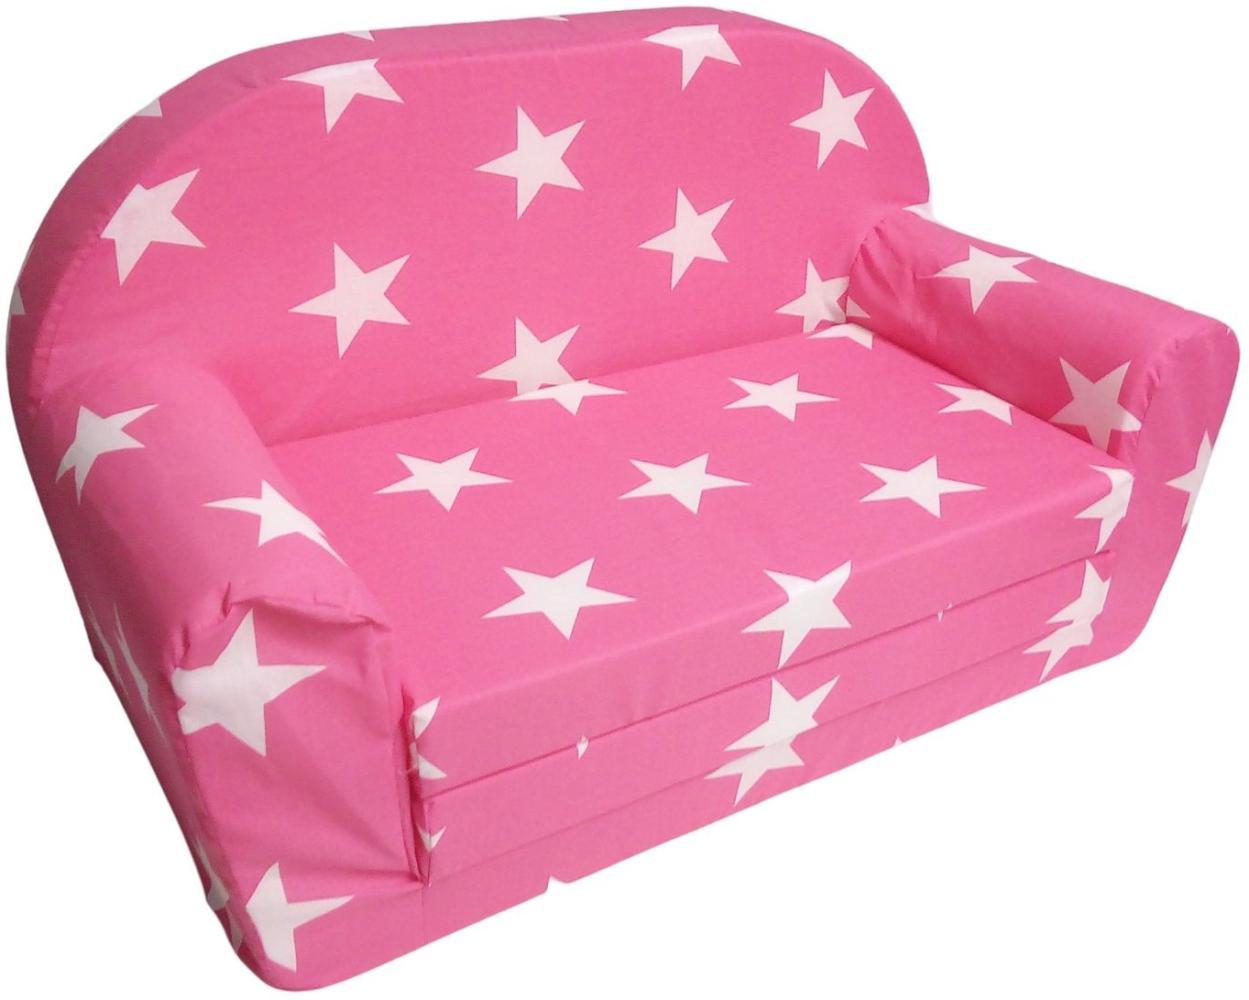 Kindersofa klappbar pink Kindercouch Kinderzimmermöbel Spielsofa Sofa Couch Bild 1